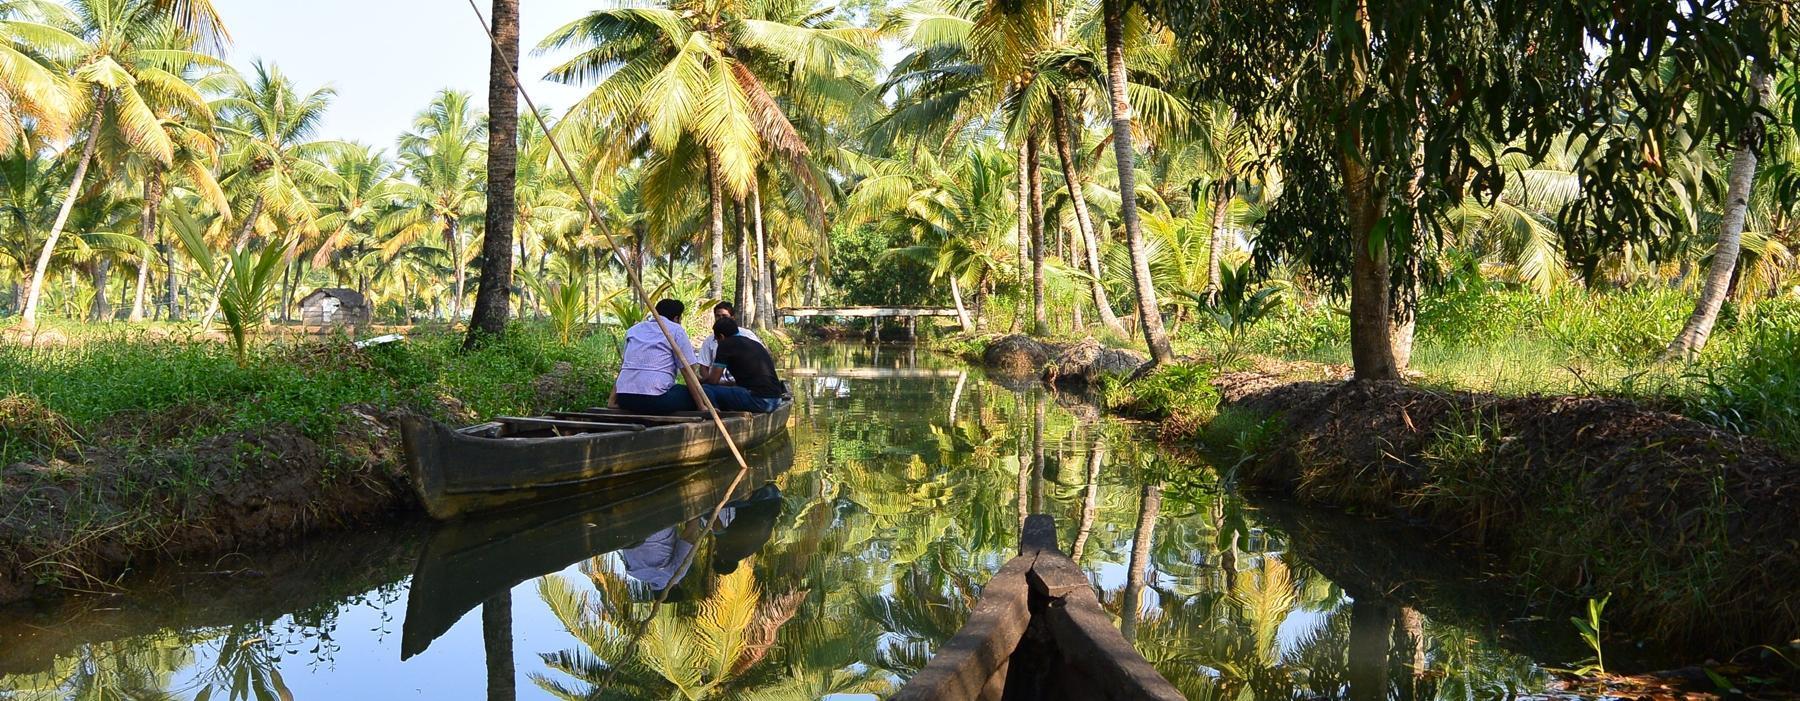 Canoe Ride in Kerala